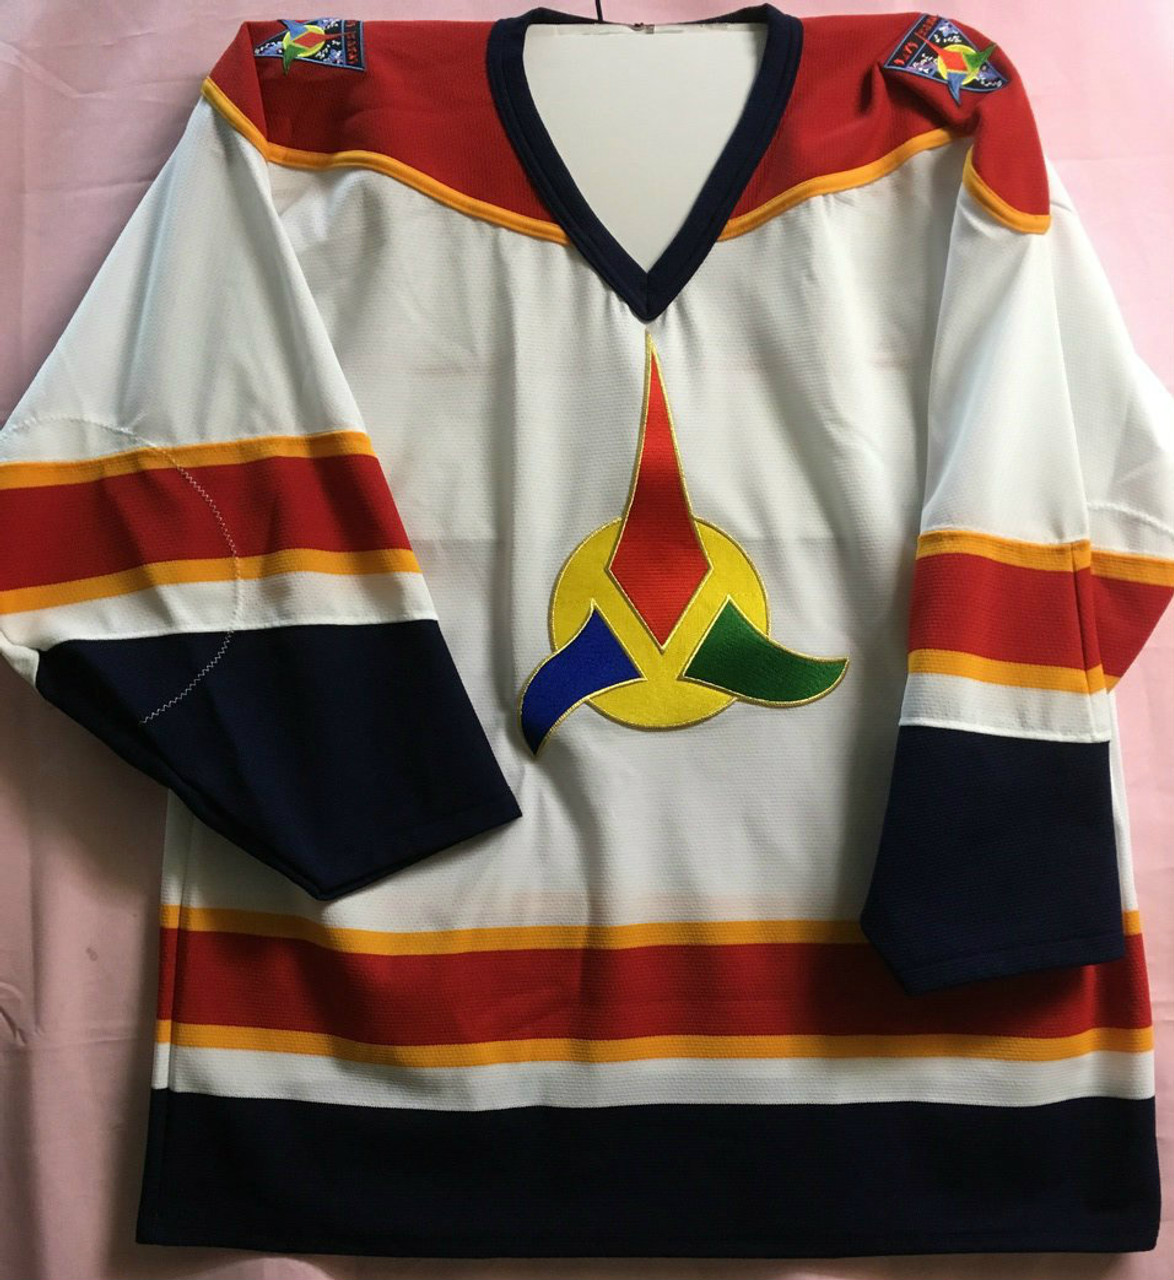 colorado rockies hockey apparel